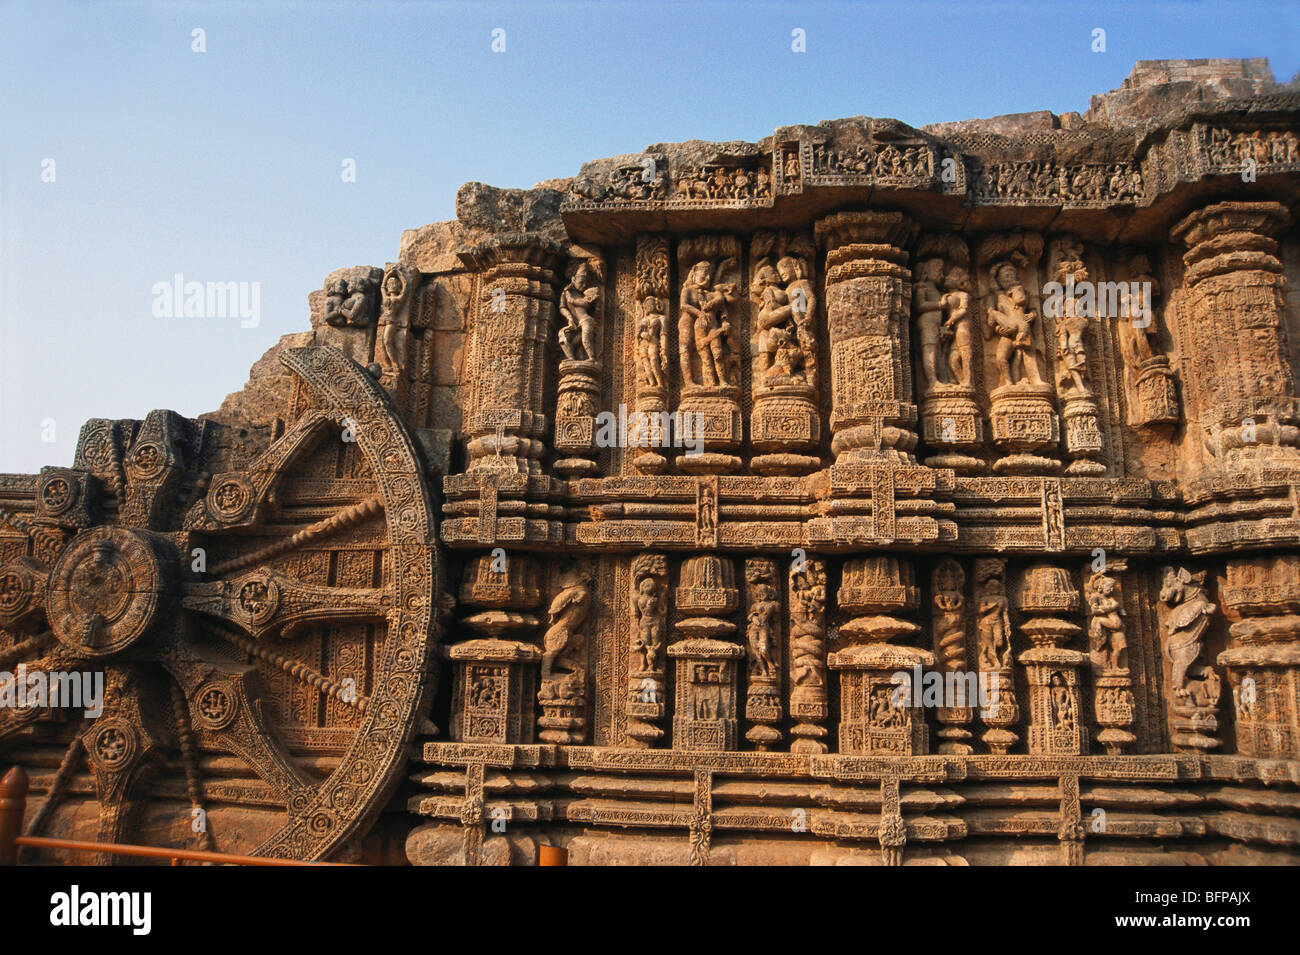 SDM 65477 : Sun temple ; Konarak ; Orissa ; India Stock Photo